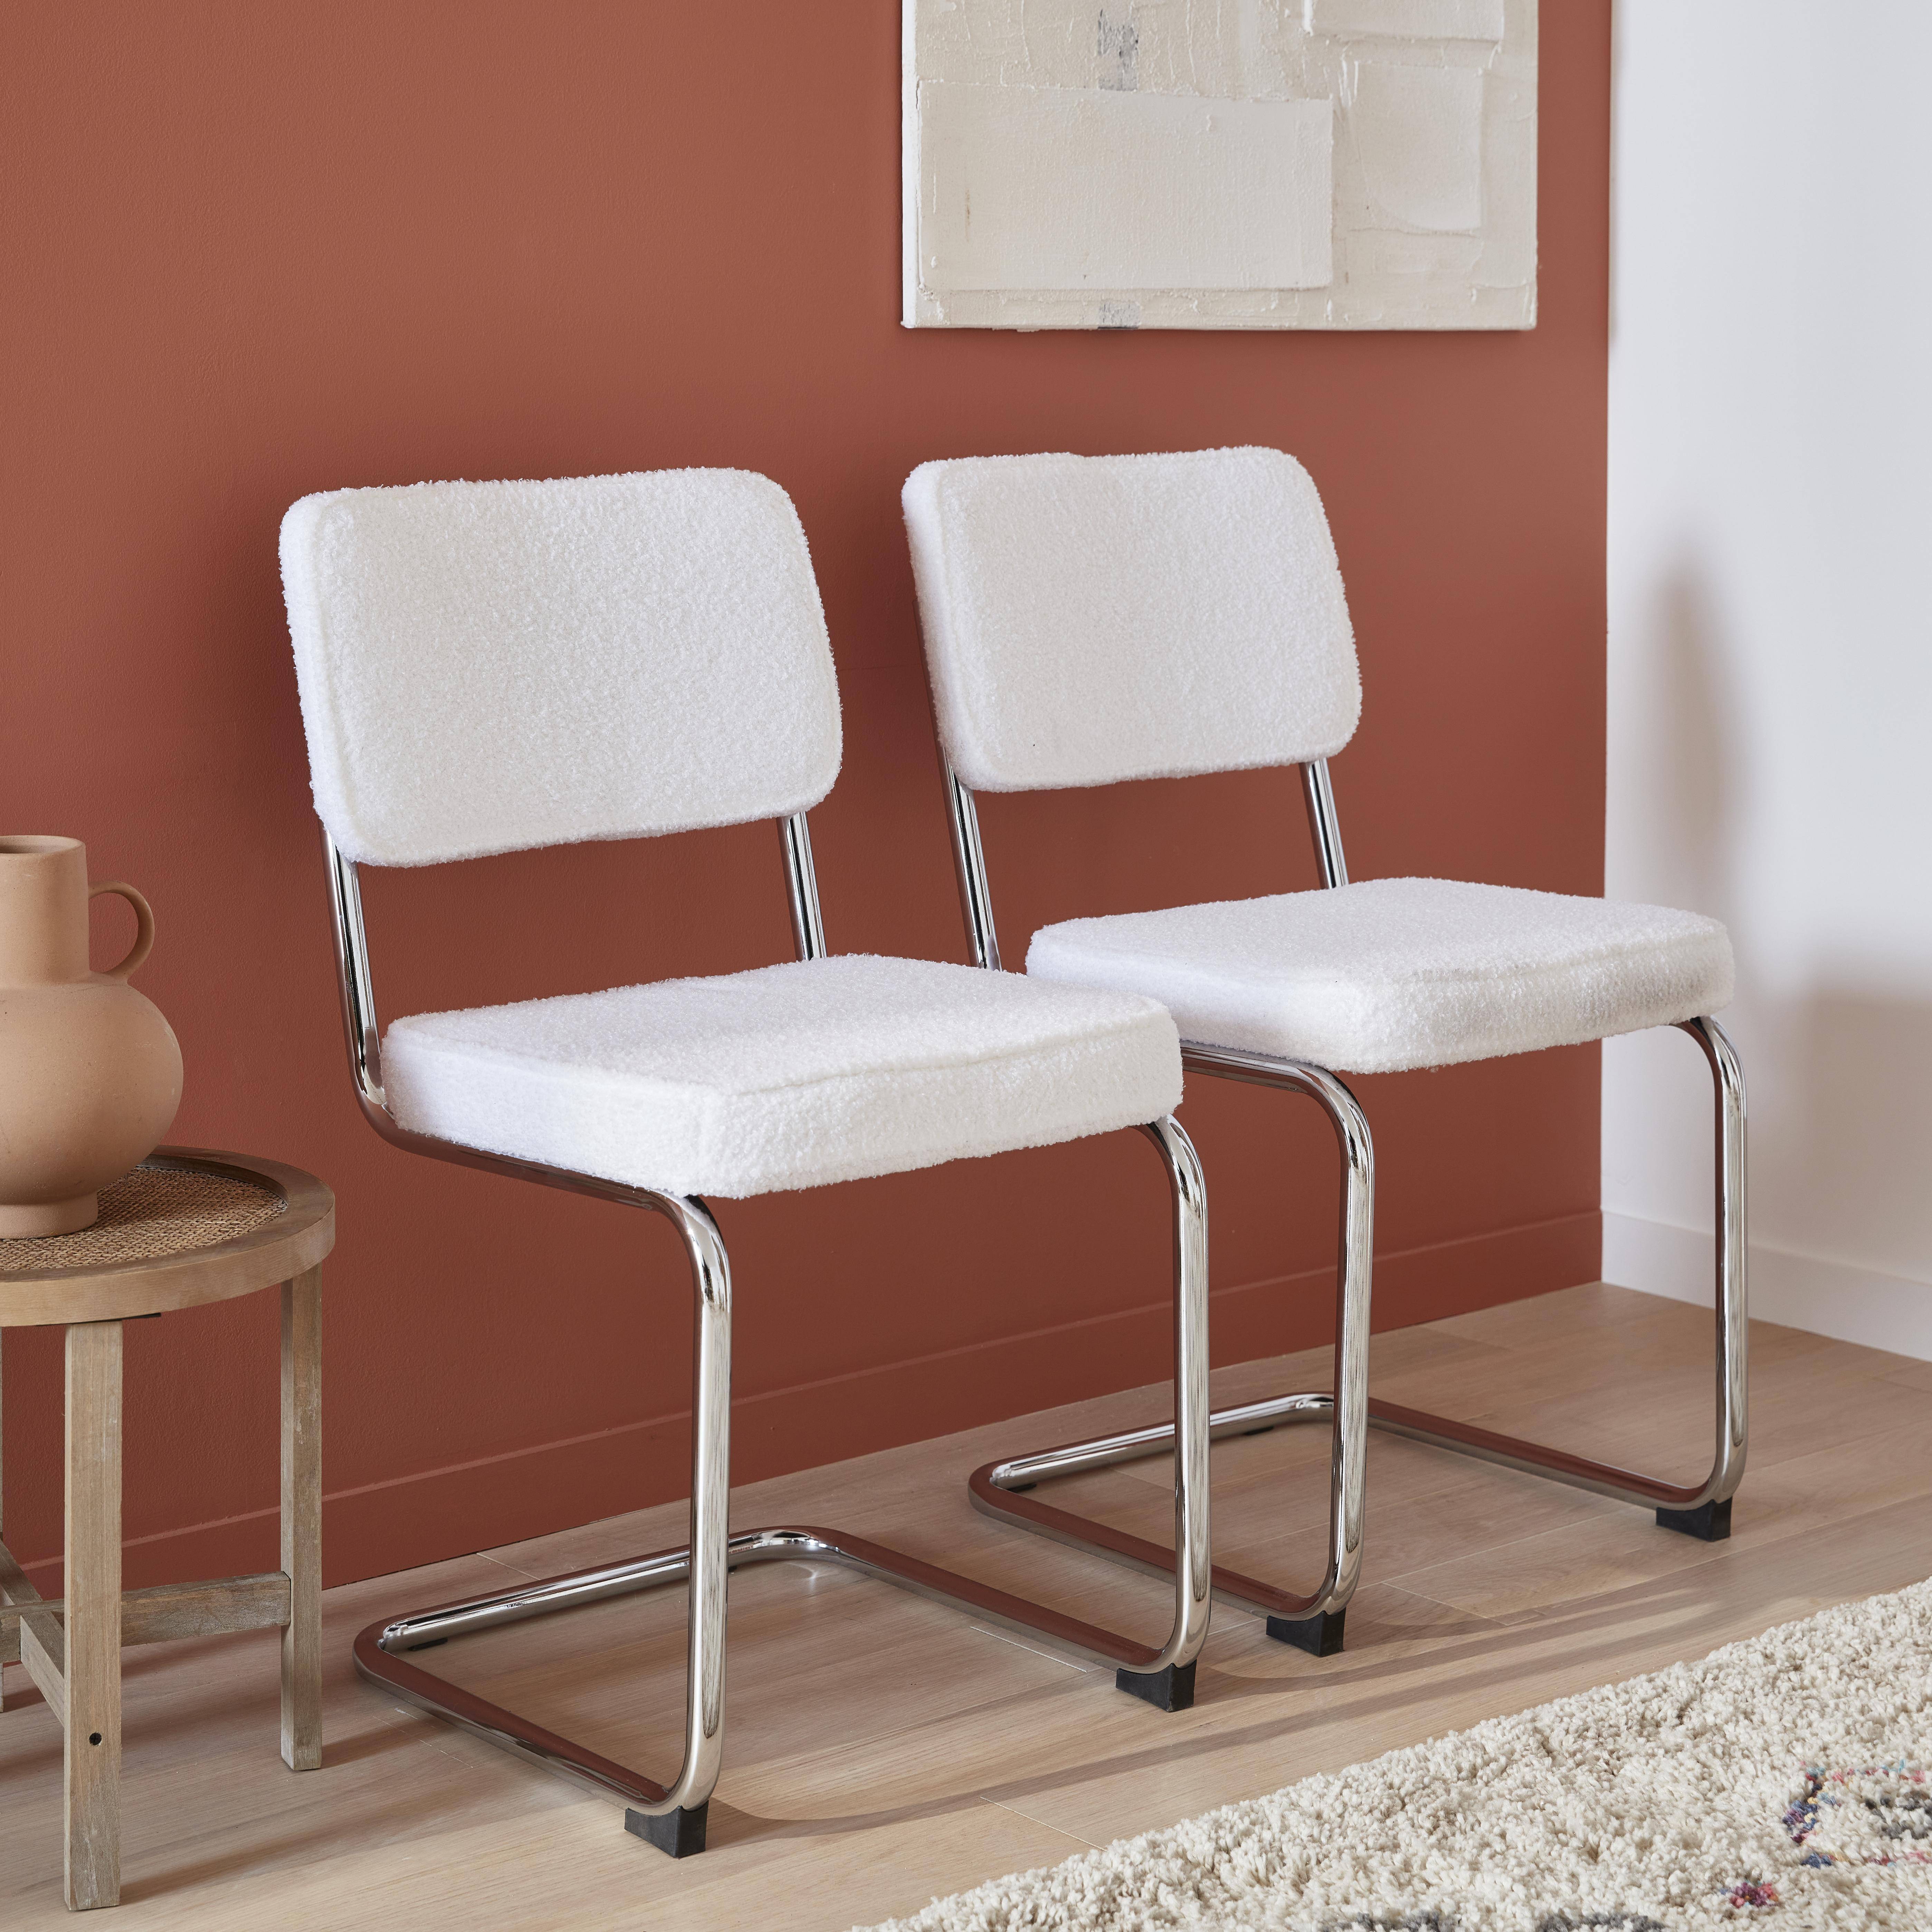 2 sillas voladizas - Maja - con rizos blancos, 46 x 54,5 x 84,5cm  ,sweeek,Photo1